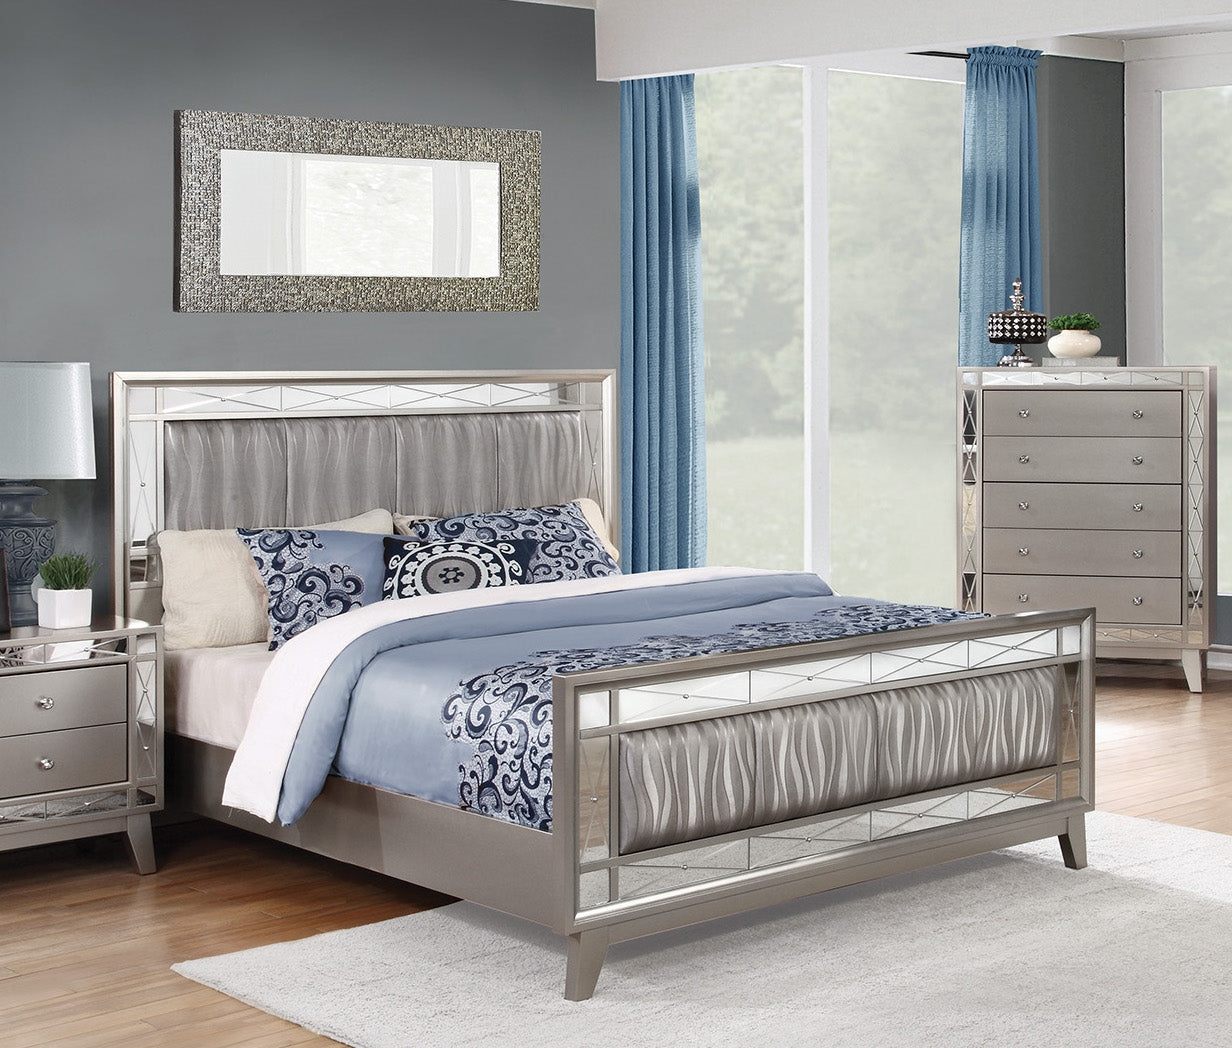 Leighton Metallic Gray Mirrored Full Bed